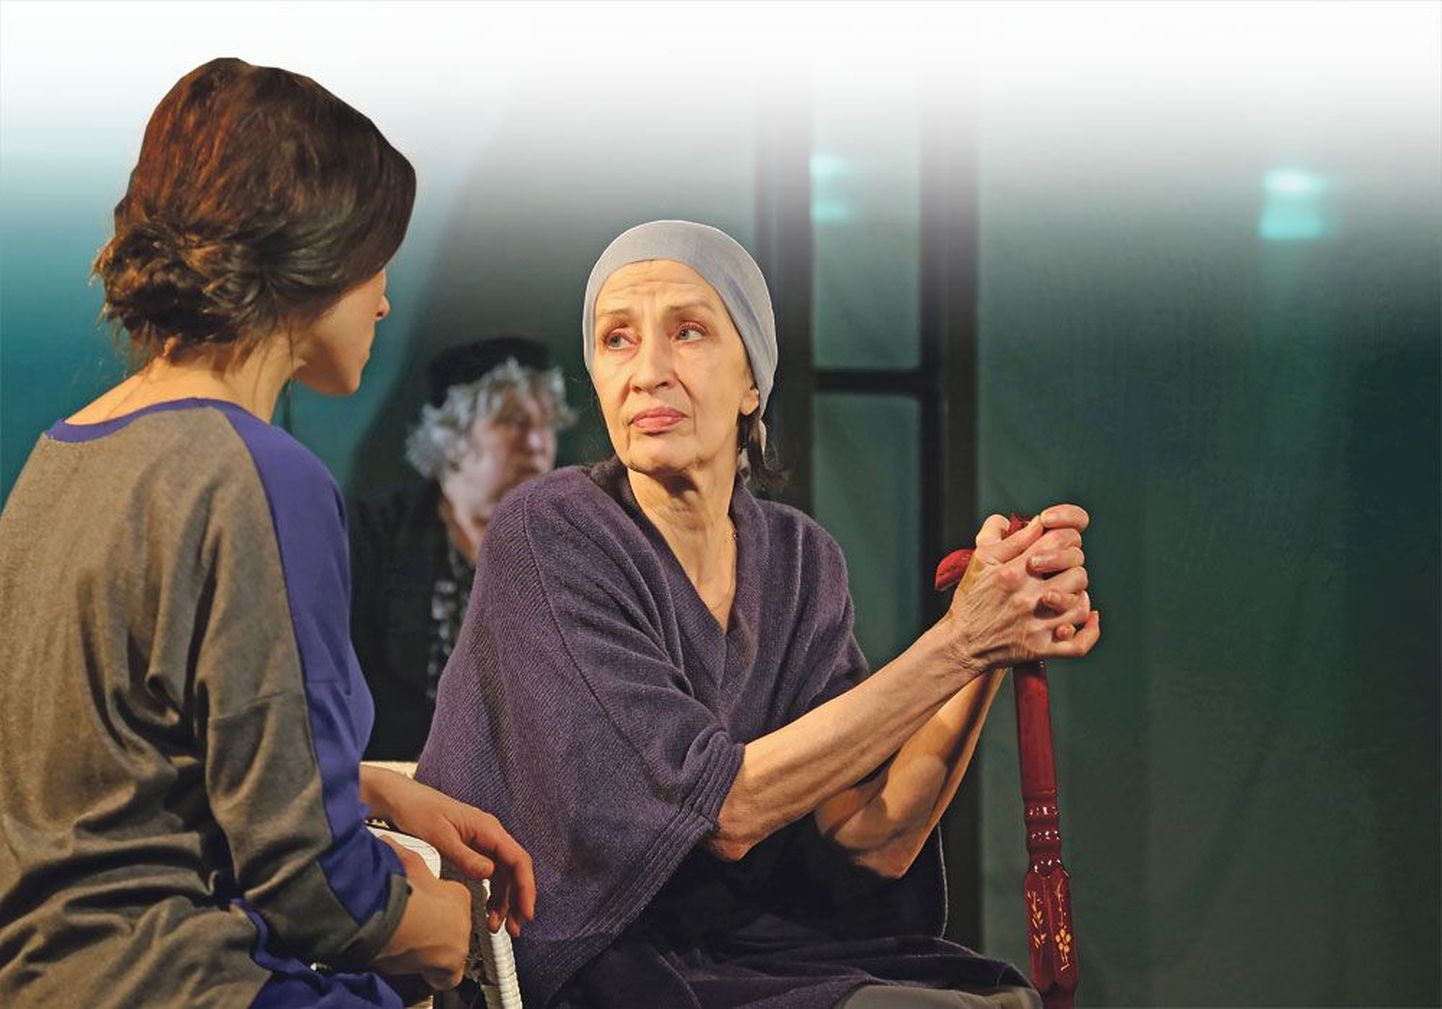 В каждой микроновелле герои возвращаются, чтобы прожить другие жизни. Катя – Лаура Петерсон, Алина Павловна – Маре Петерсон, Пожилая женщина – Мария Кленская (справа).